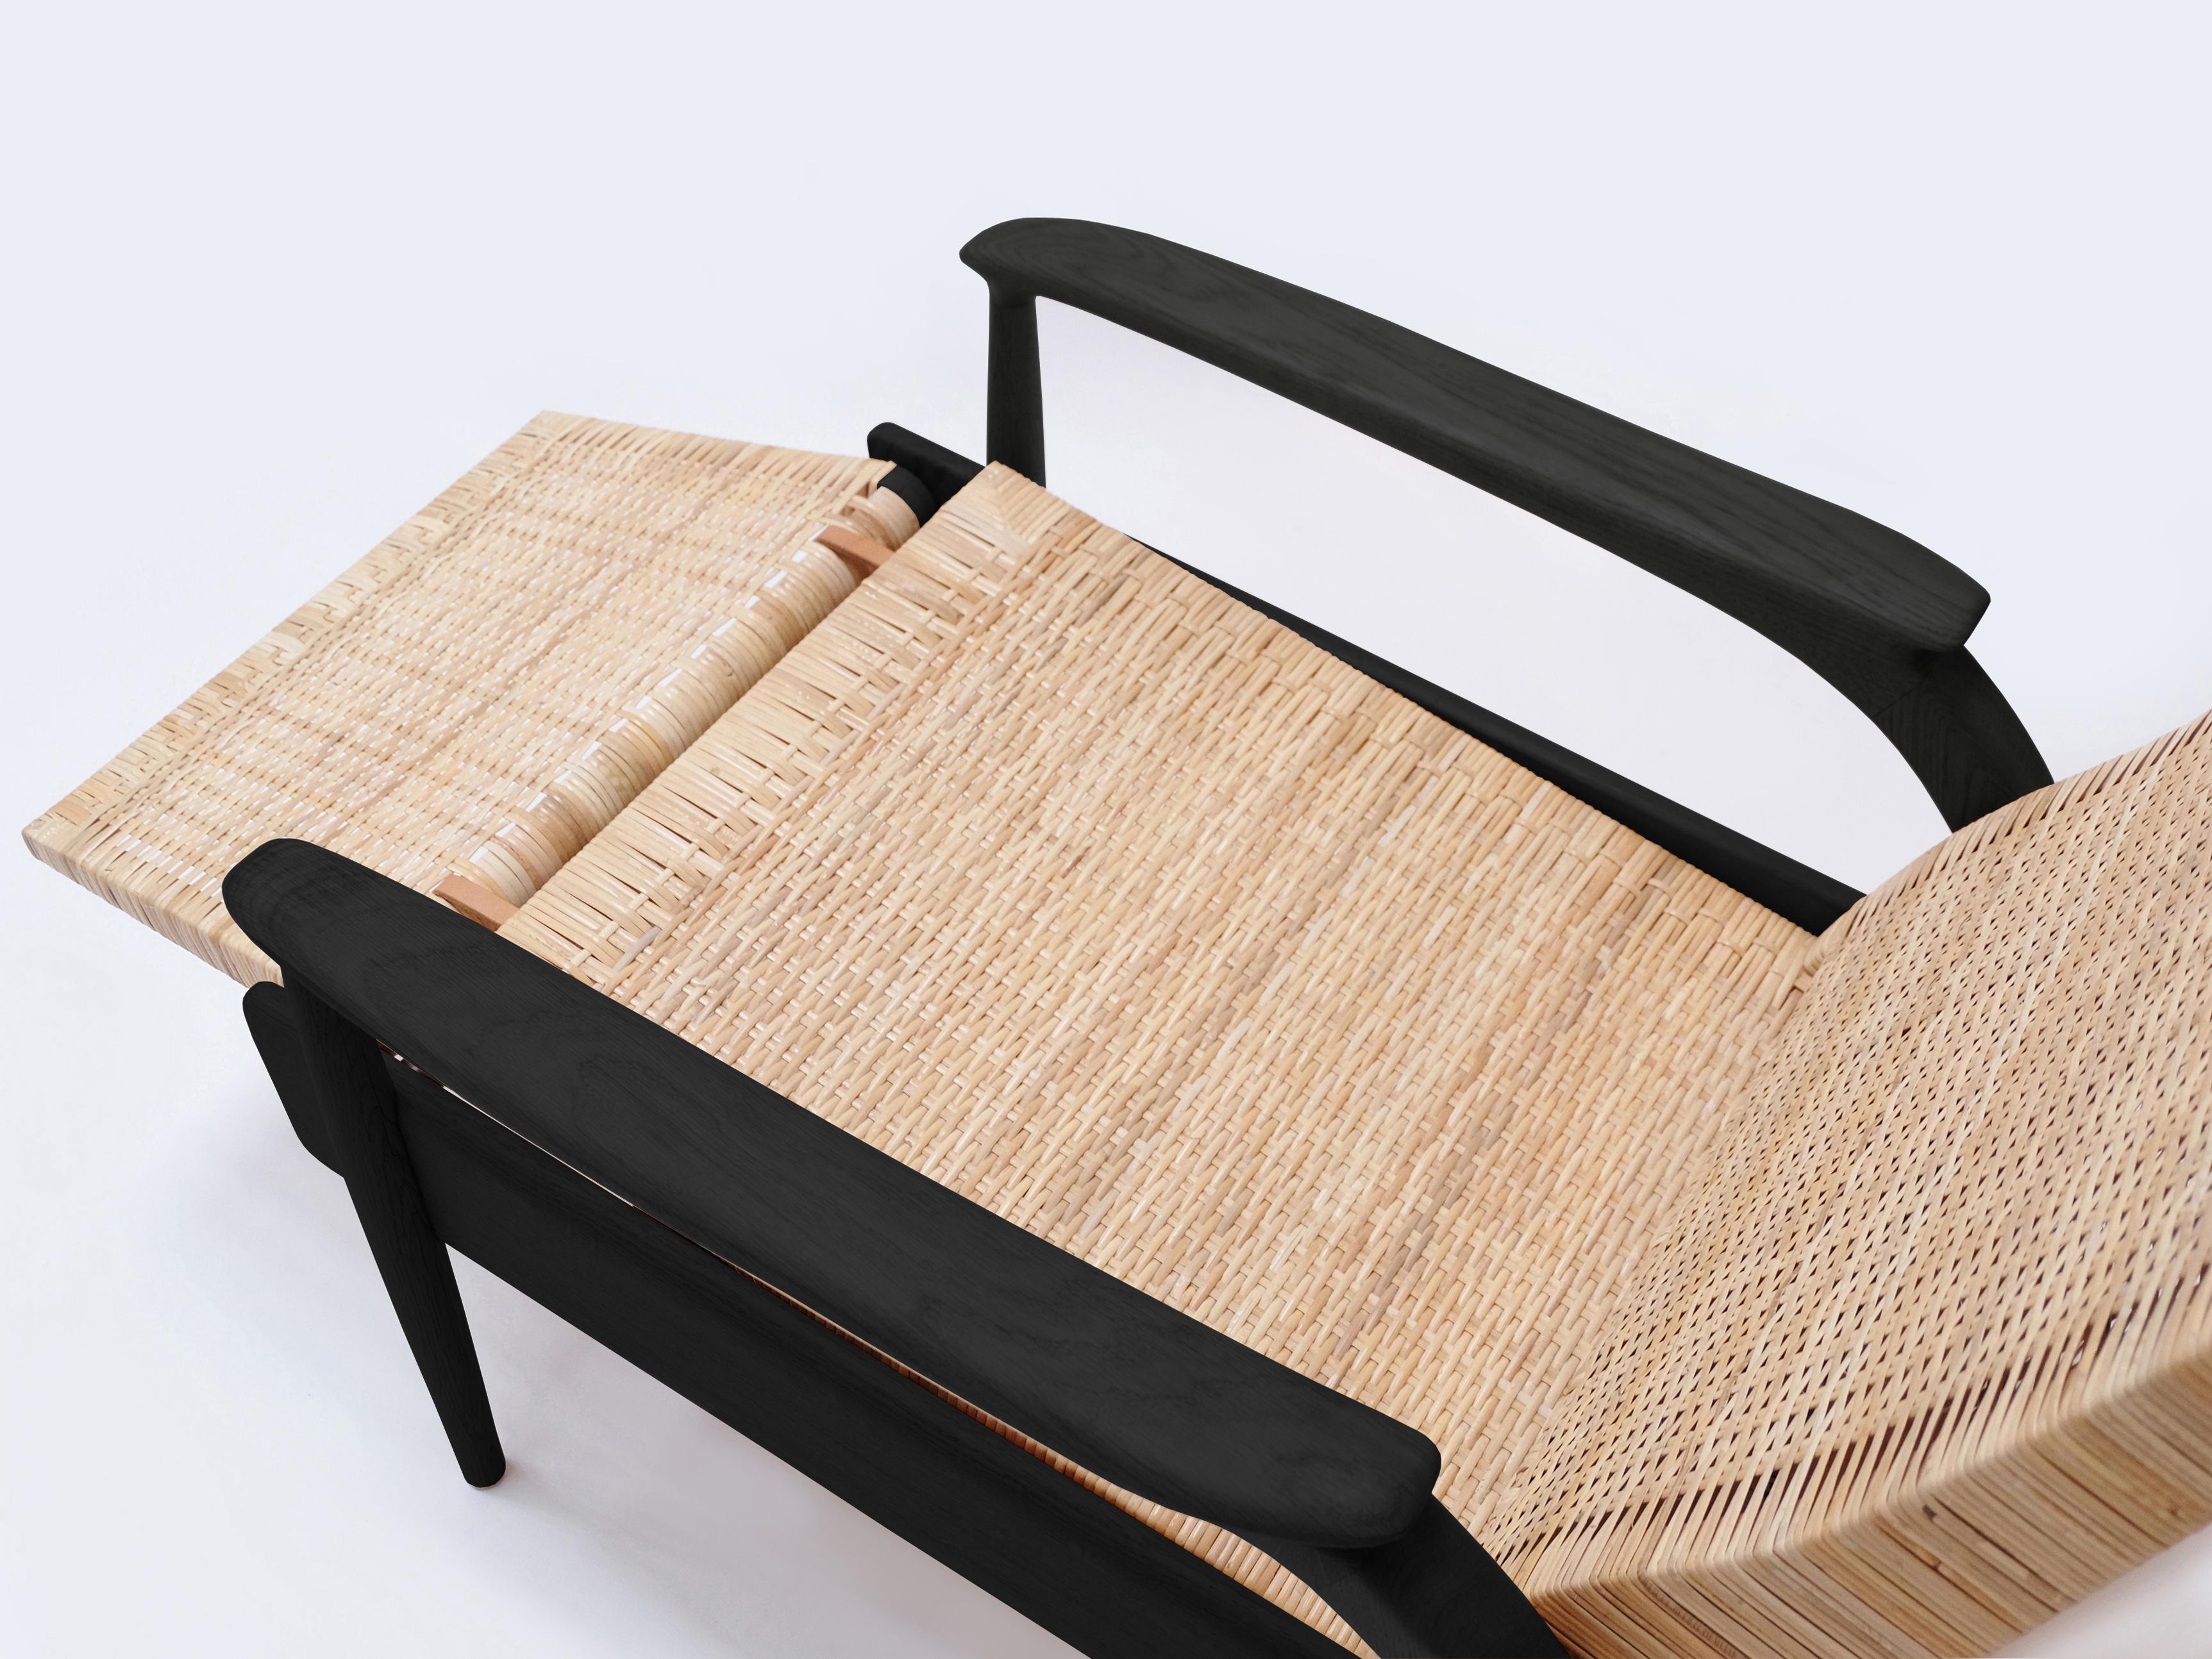 Maßgefertigte, handgefertigte Eco-Lounge-Stühle FENDRIK von Studio180degree
Abgebildet in nachhaltiger, massiver, geschwärzter Eiche und natürlichem, ungefärbtem Schilfrohr

Edel - taktil - raffiniert - nachhaltig
Reclining Eco Lounge Chair FENDRIK